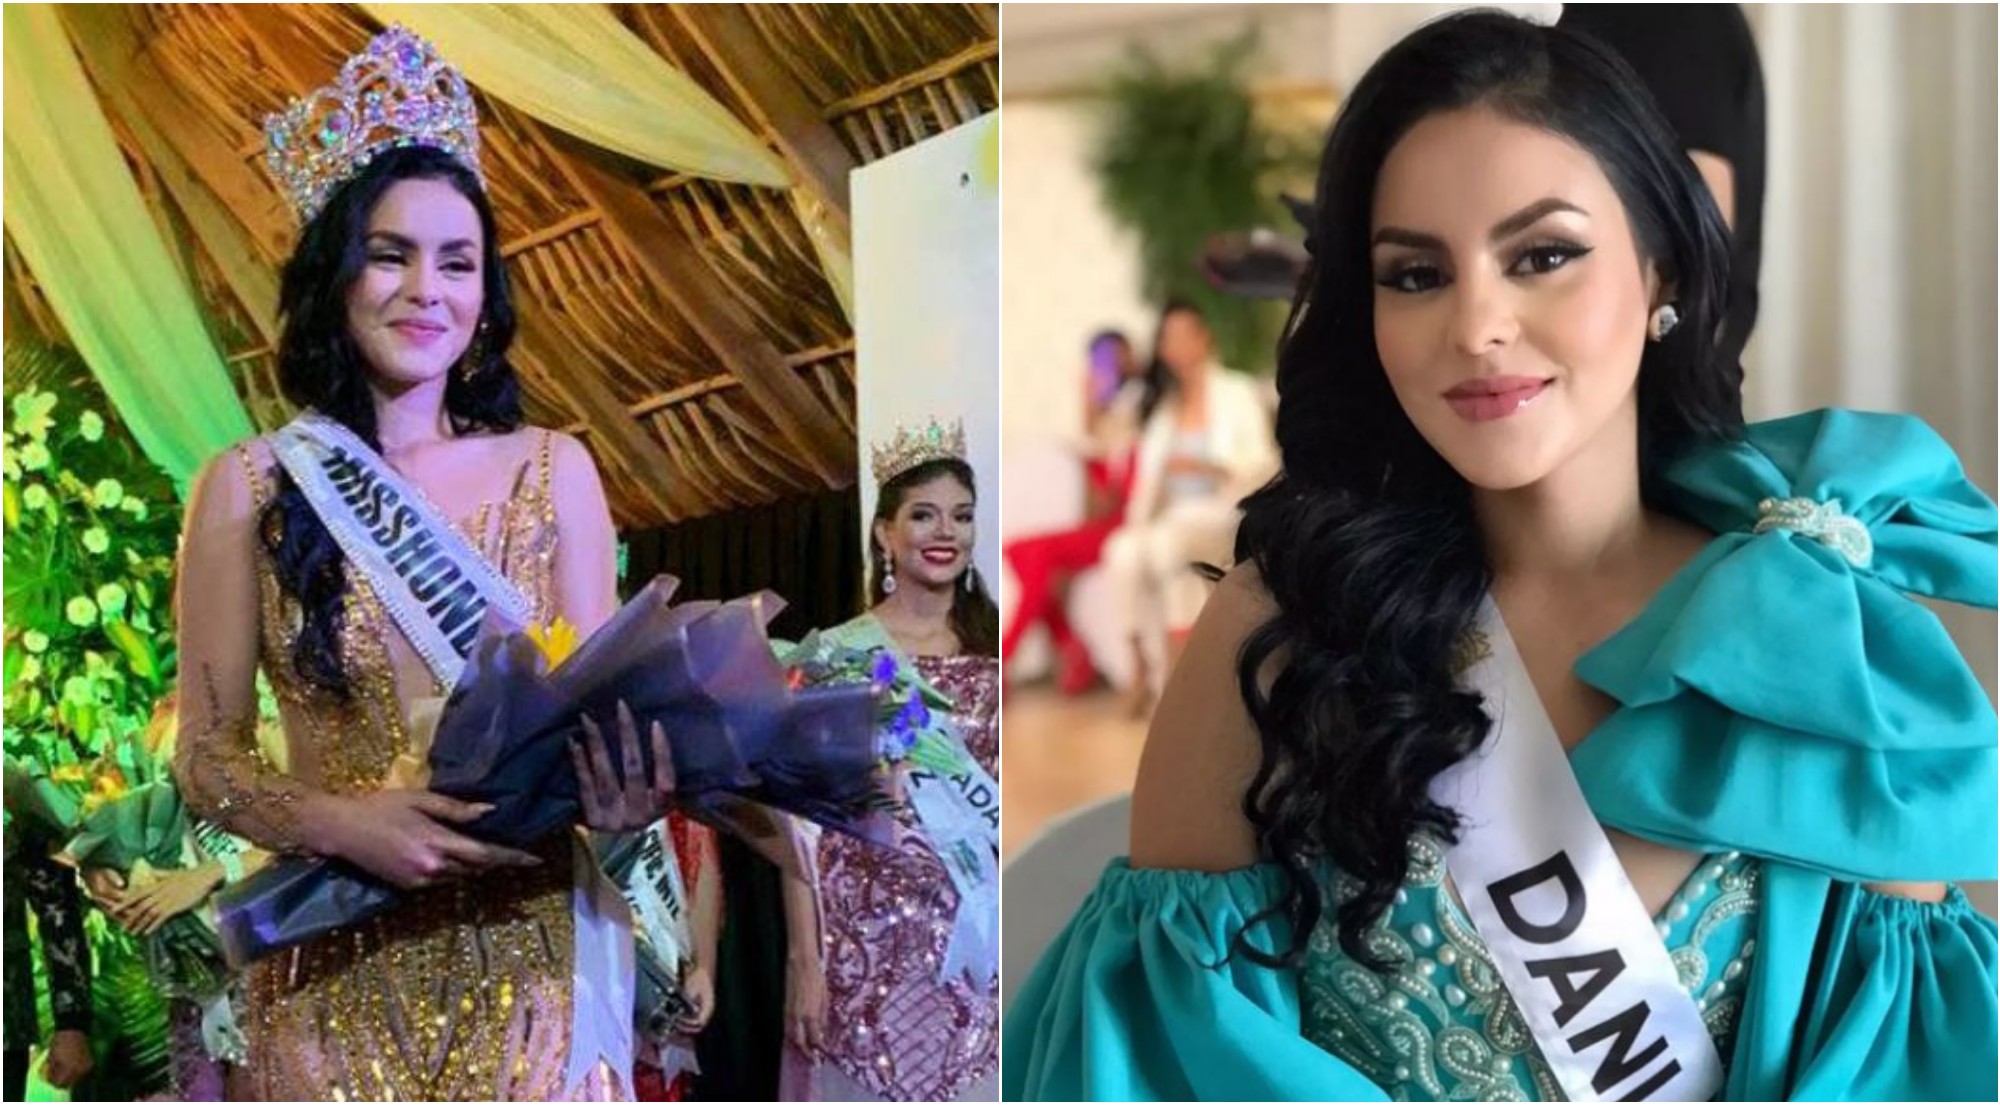 Hondureña Yelsin Almendárez es la nueva Miss Honduras Mundo 2022